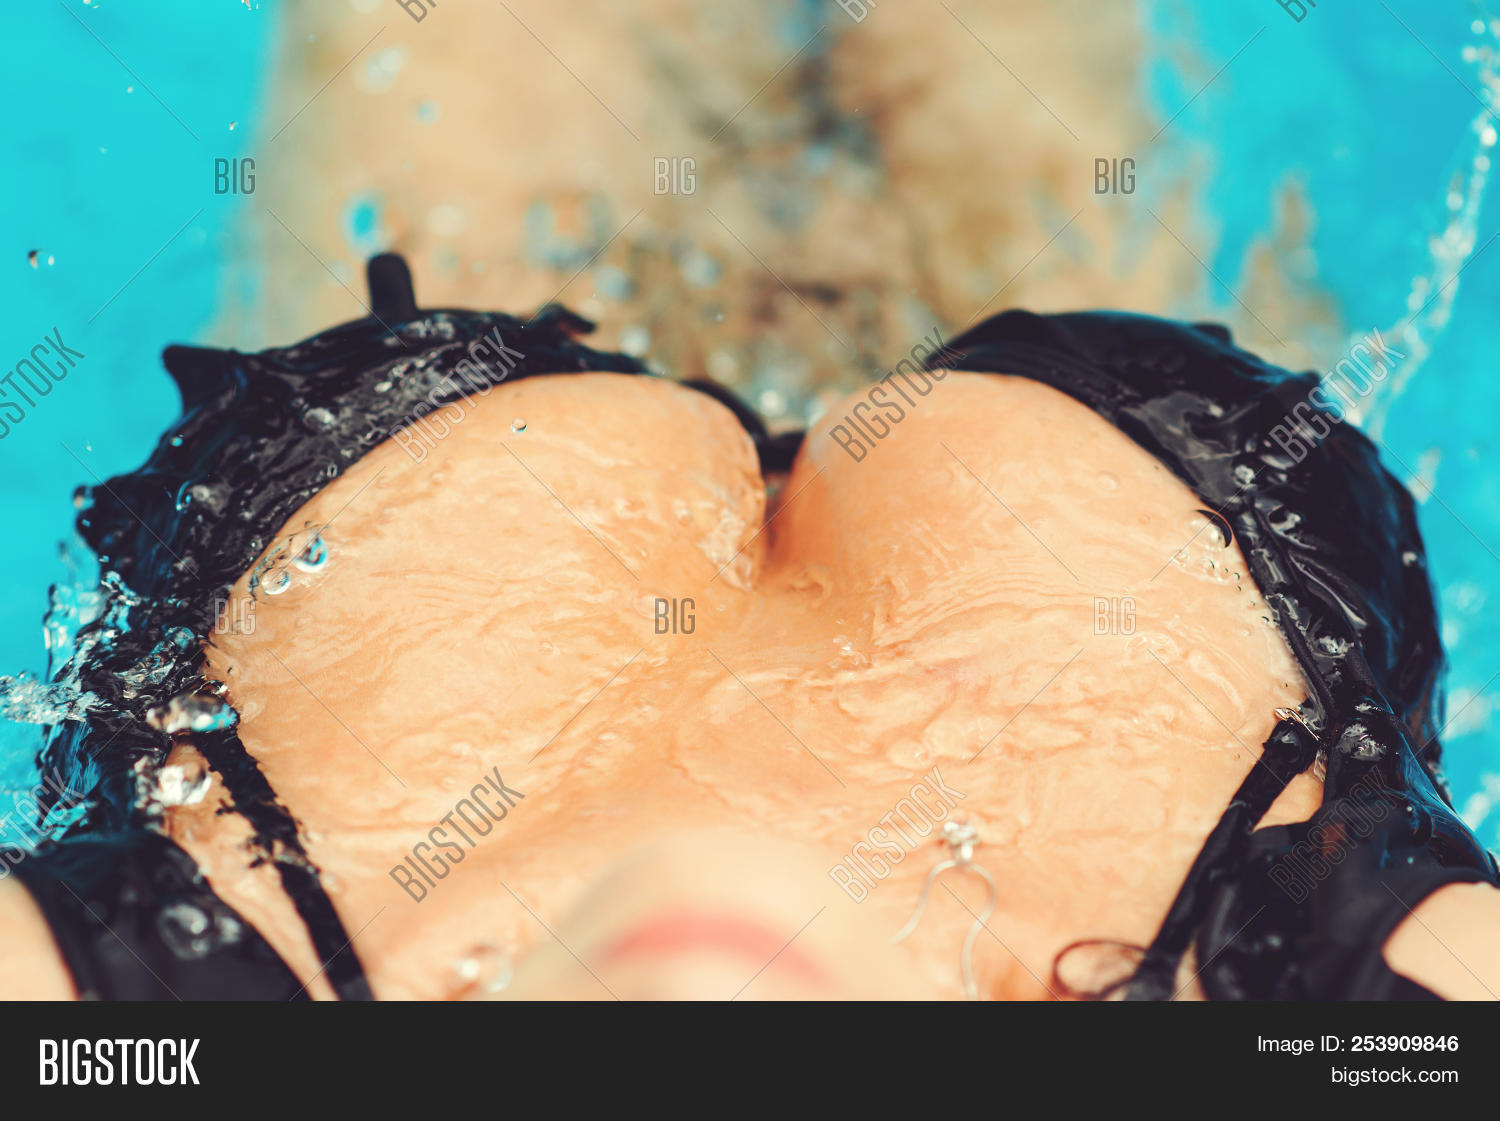 cedric cross share sexy boob drop photos